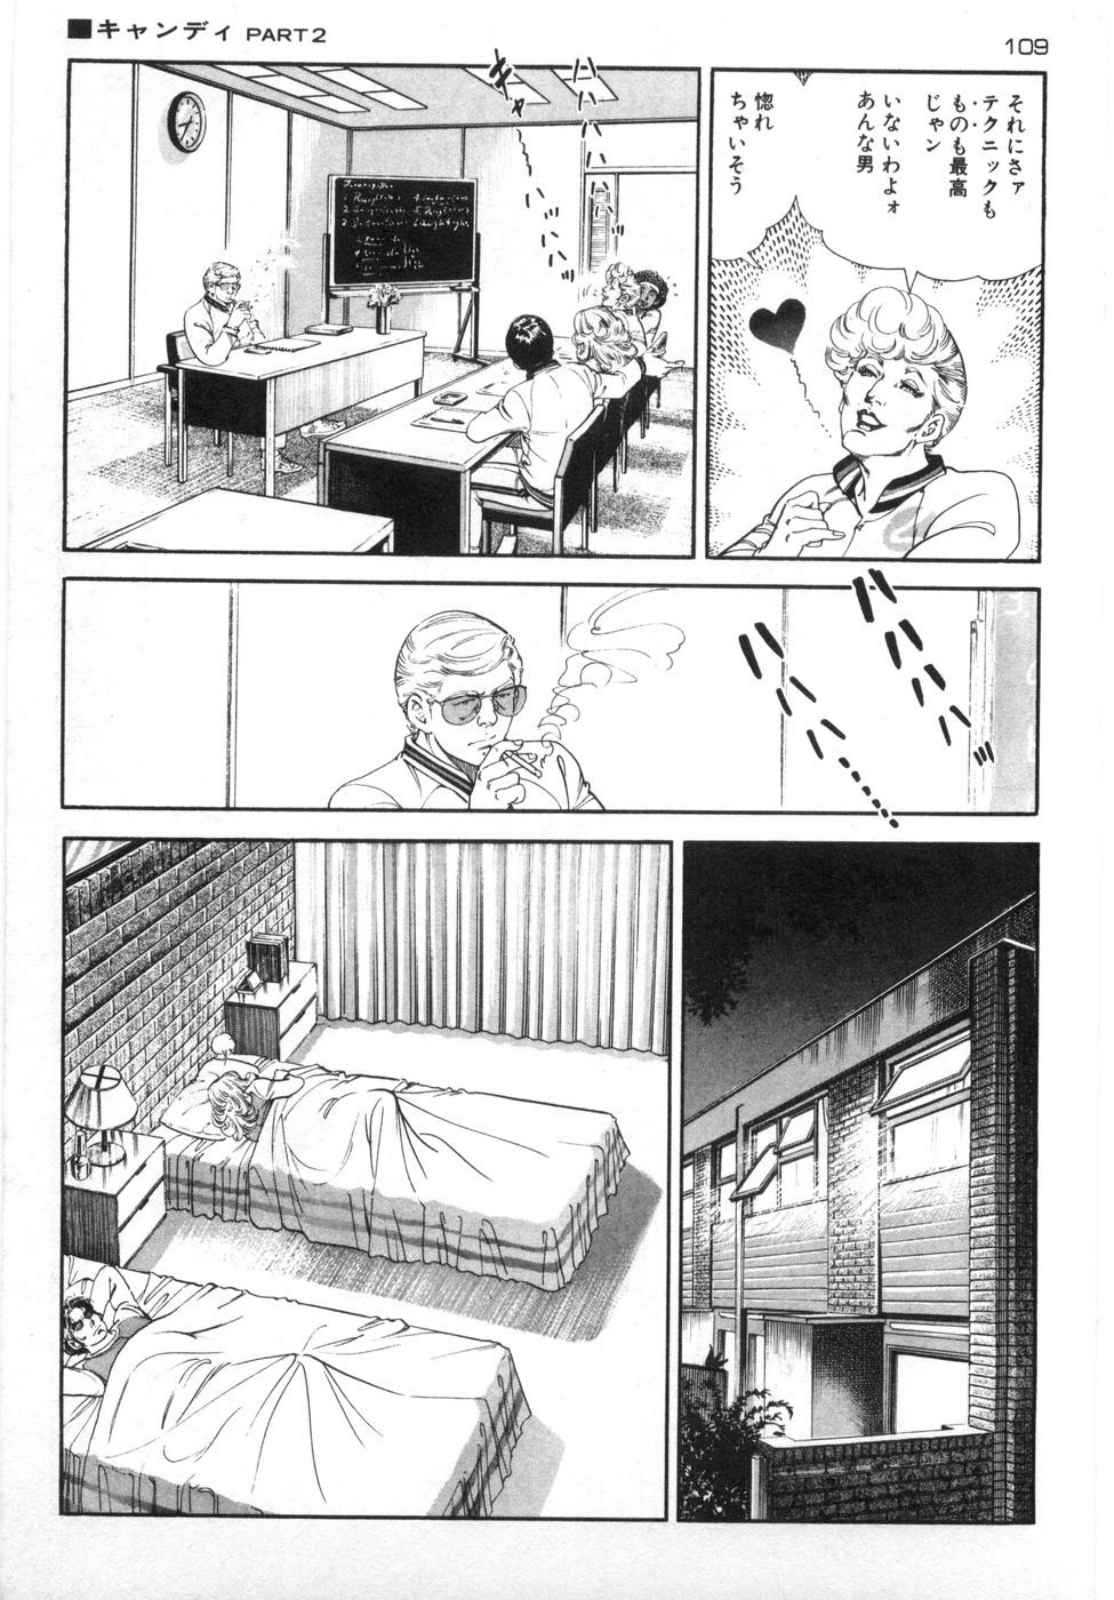 [Kano Seisaku, Koike Kazuo] Jikken Ningyou Dummy Oscar Vol.14 [叶精作, 小池一夫] 実験人形ダミー・オスカー 第14巻